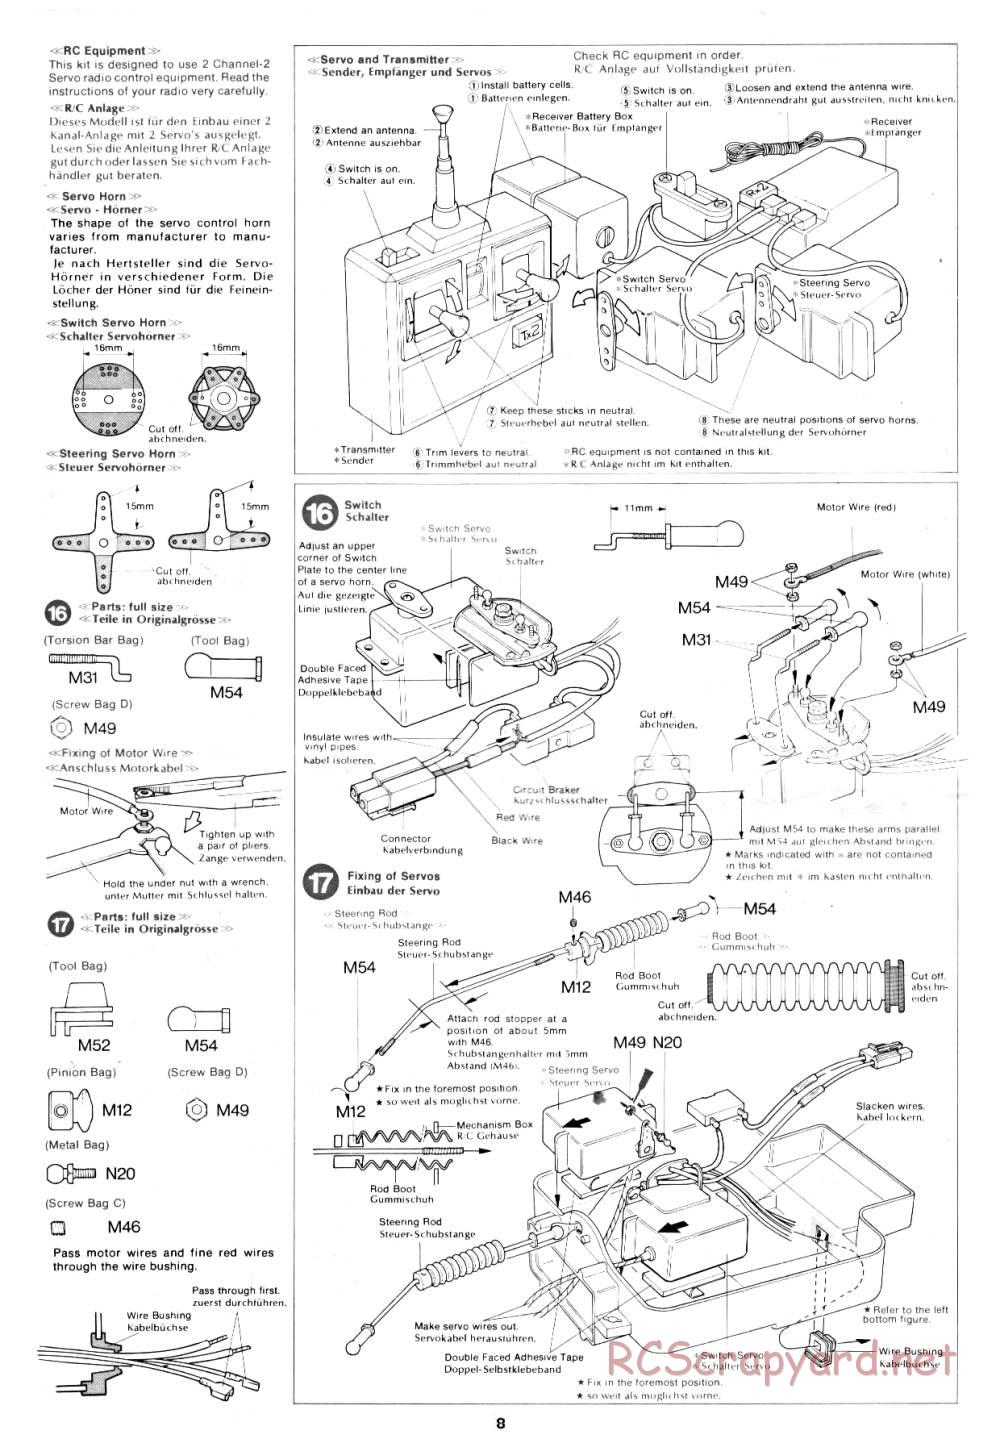 Tamiya - Rough Rider - 58015 - Manual - Page 8